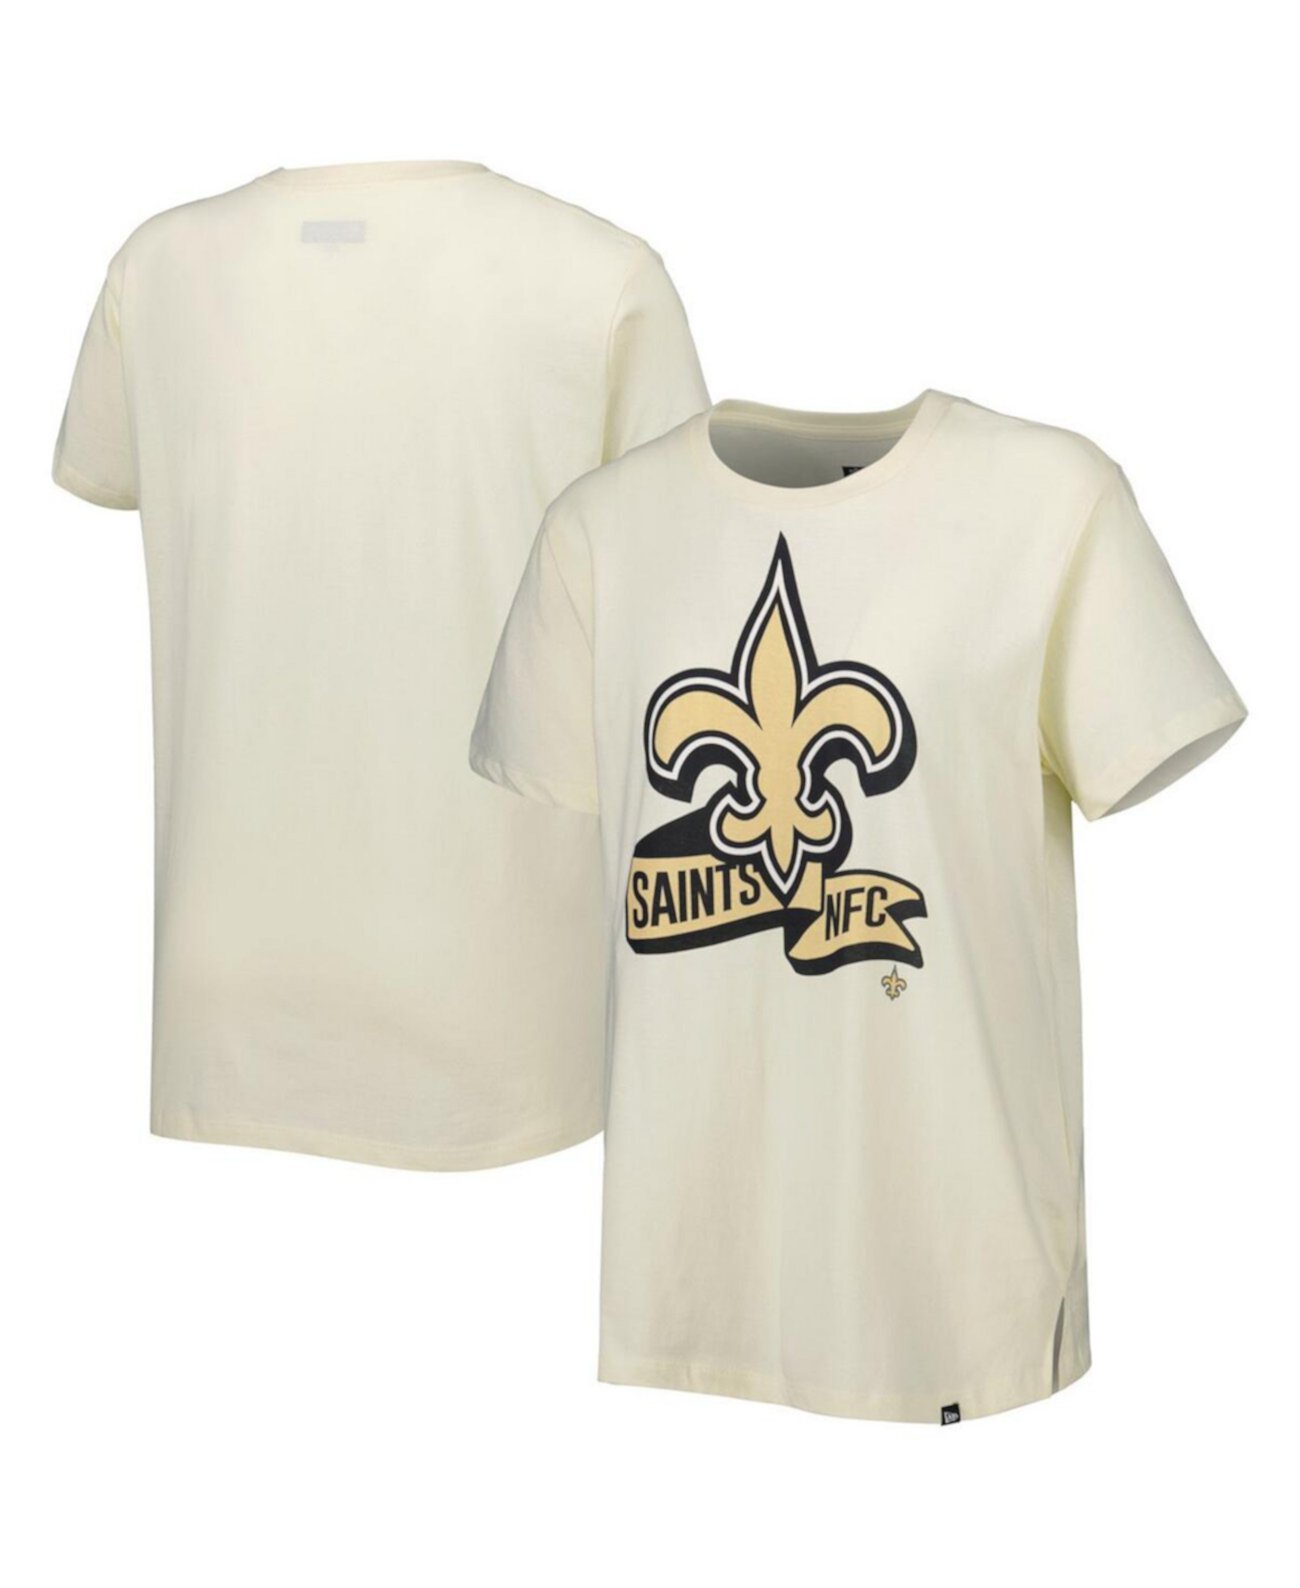 Женская кремовая футболка New Orleans Saints Chrome Sideline New Era